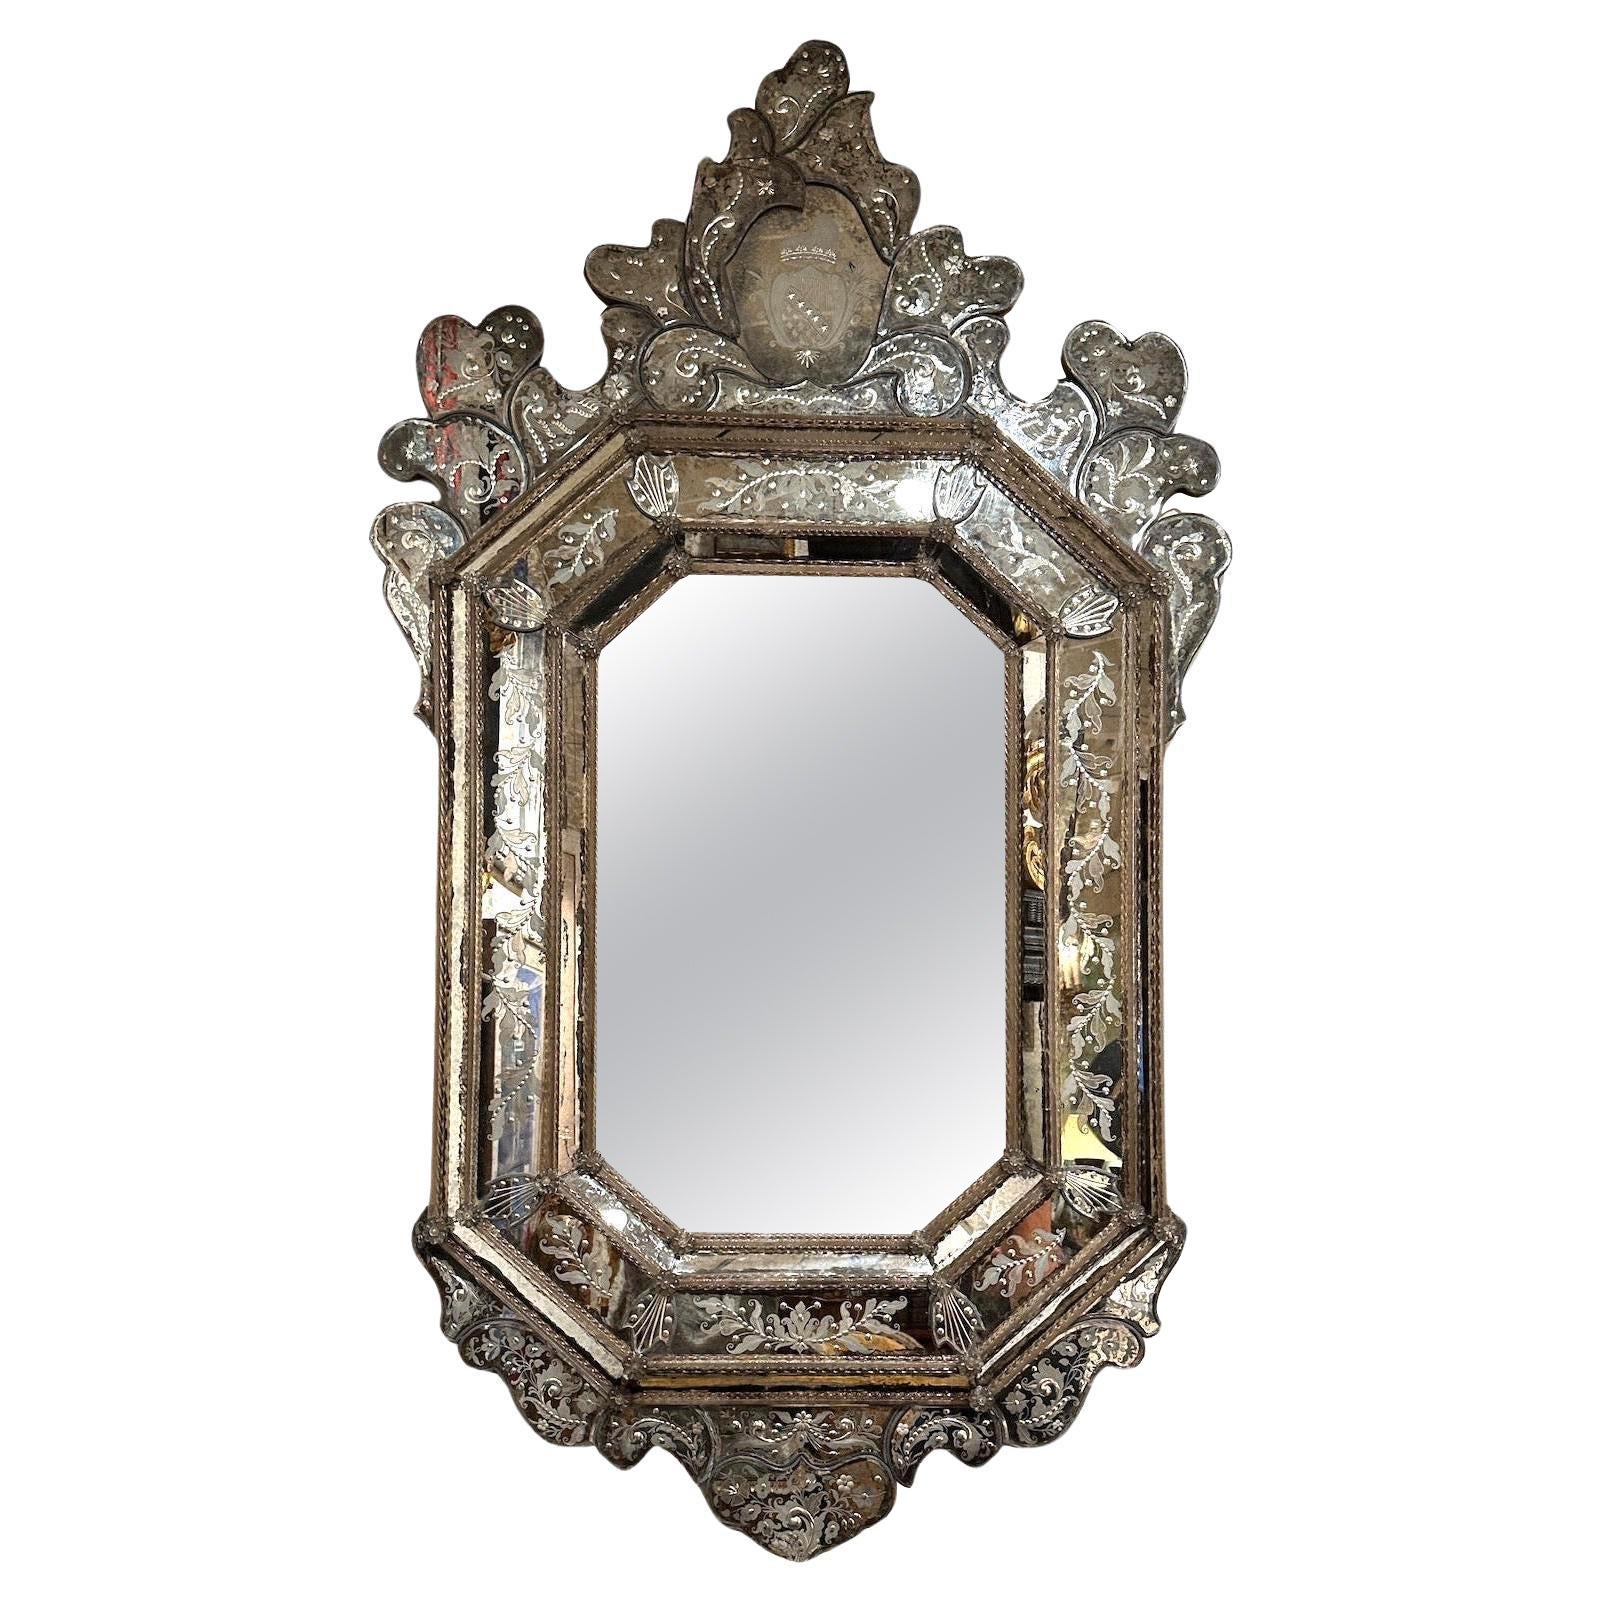 How do you clean a Venetian mirror?